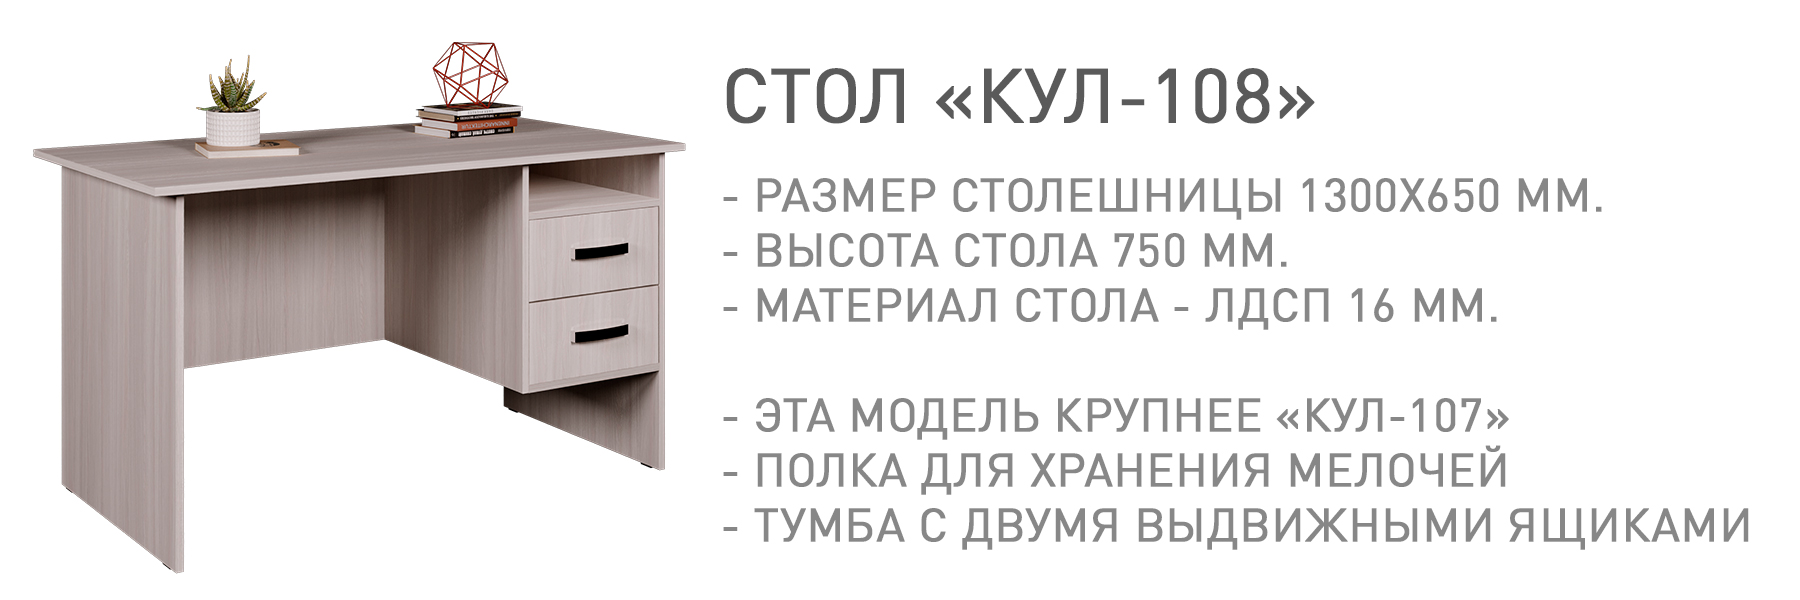 КУЛ-108-КУЛ-00061.jpg